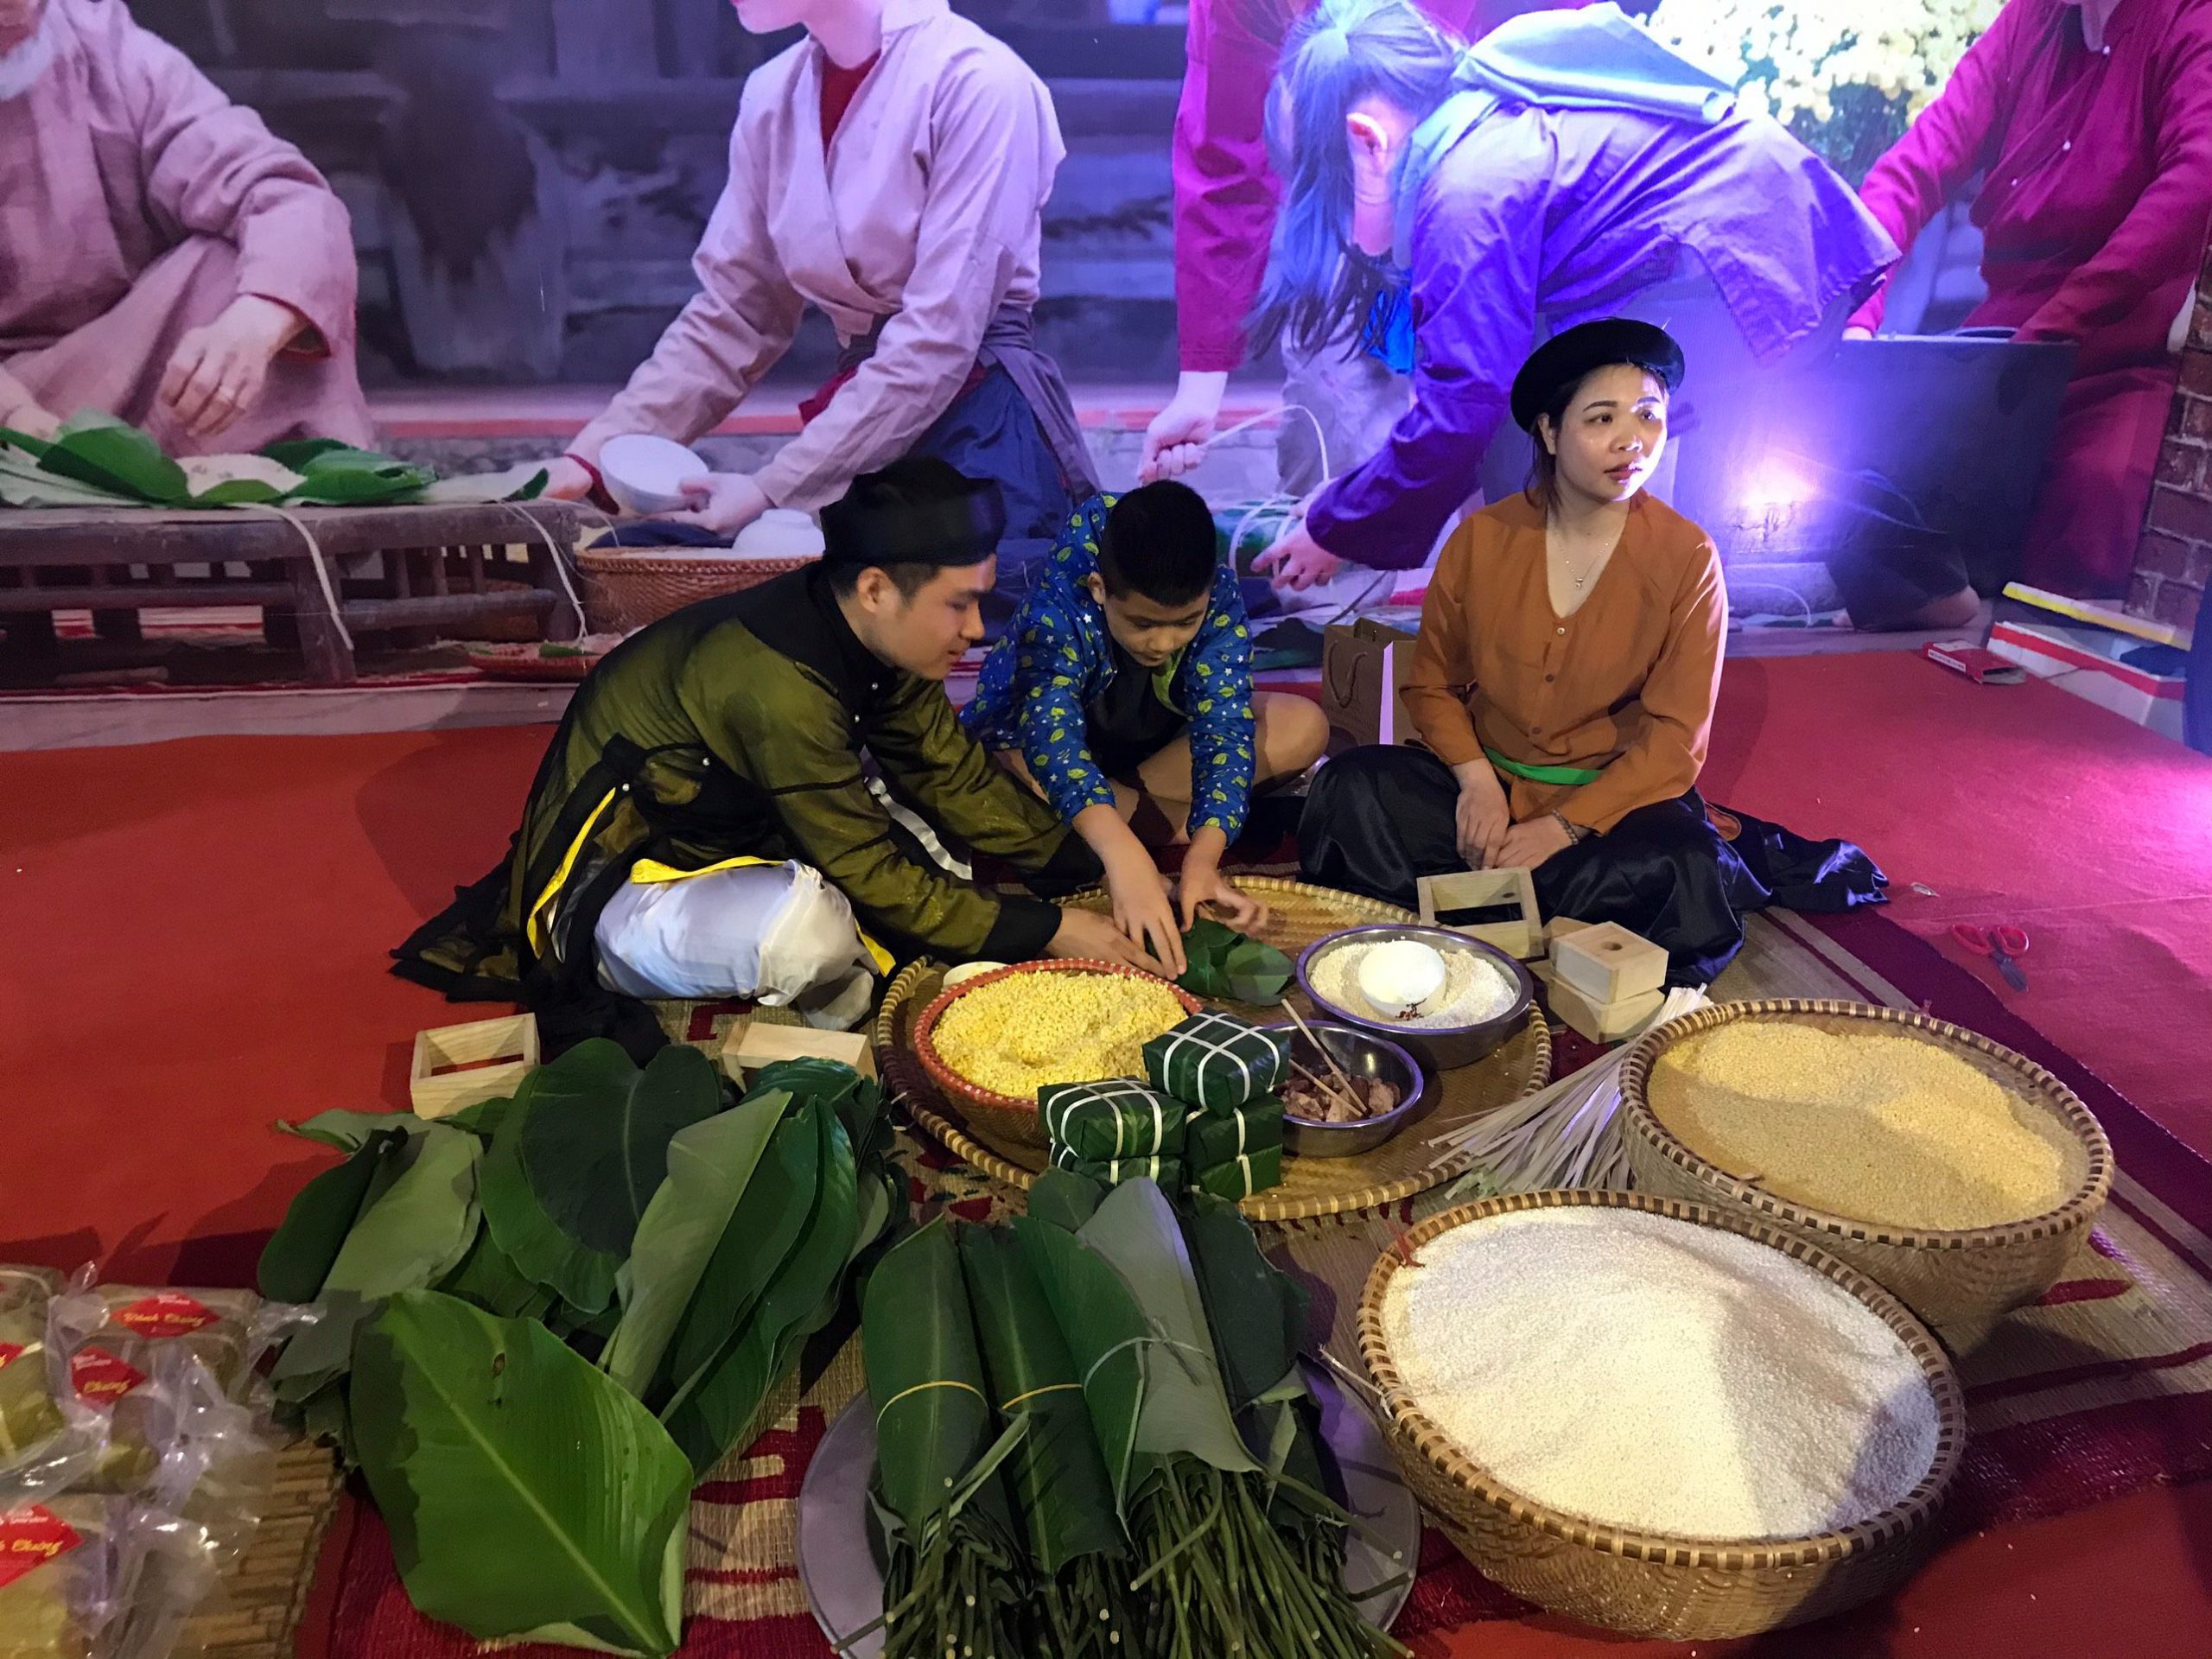 Rượu mơ Yên Tử tham gia hội chợ đặc sản vùng miền happy Tết 2021